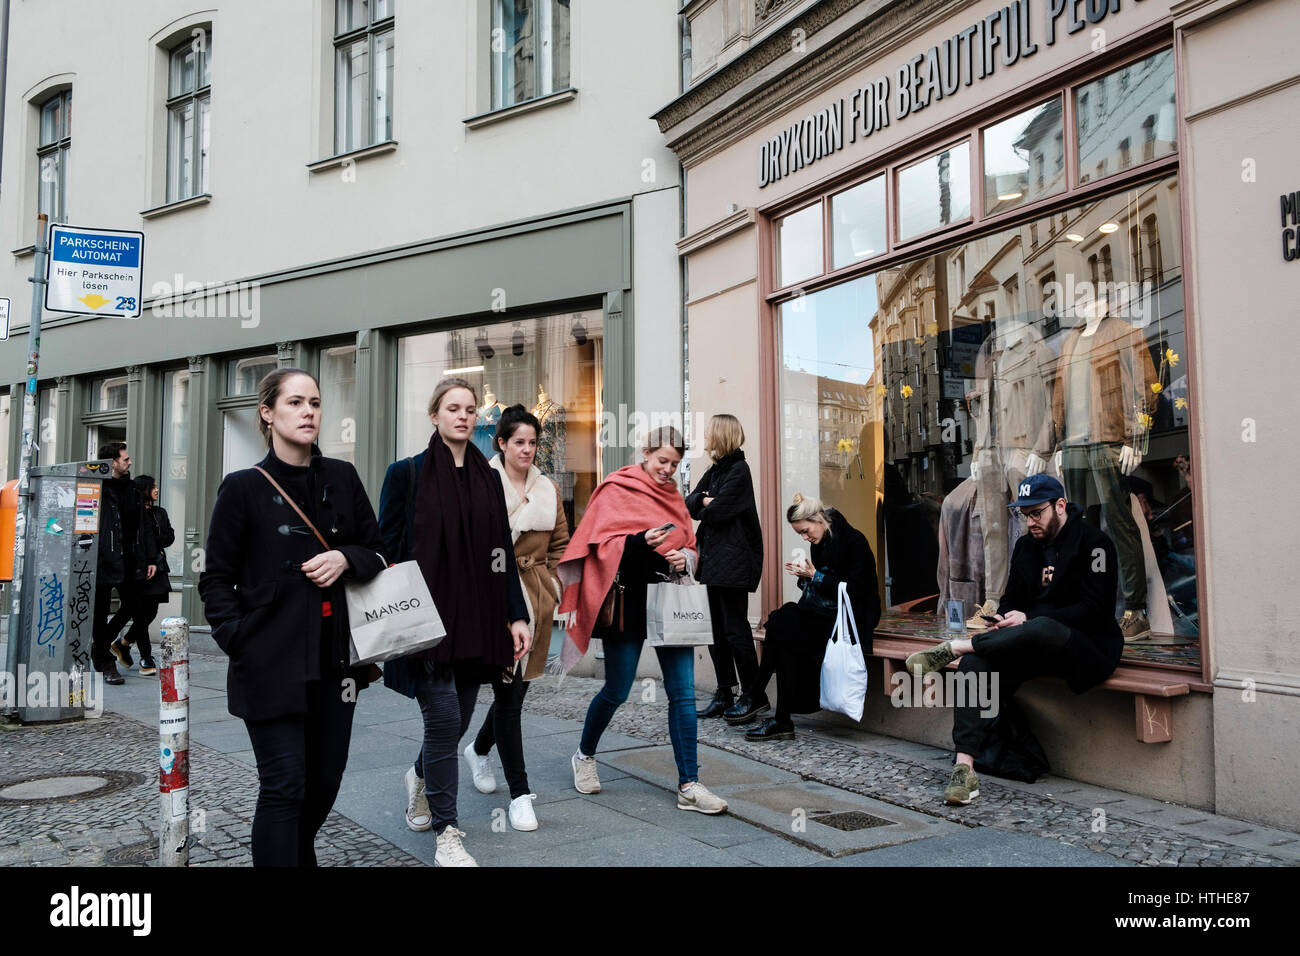 La gente en Neue Schonhauser Strasse, la calle de moda con muchas boutiques de diseñadores en Mitte, Berlin, Alemania Foto de stock